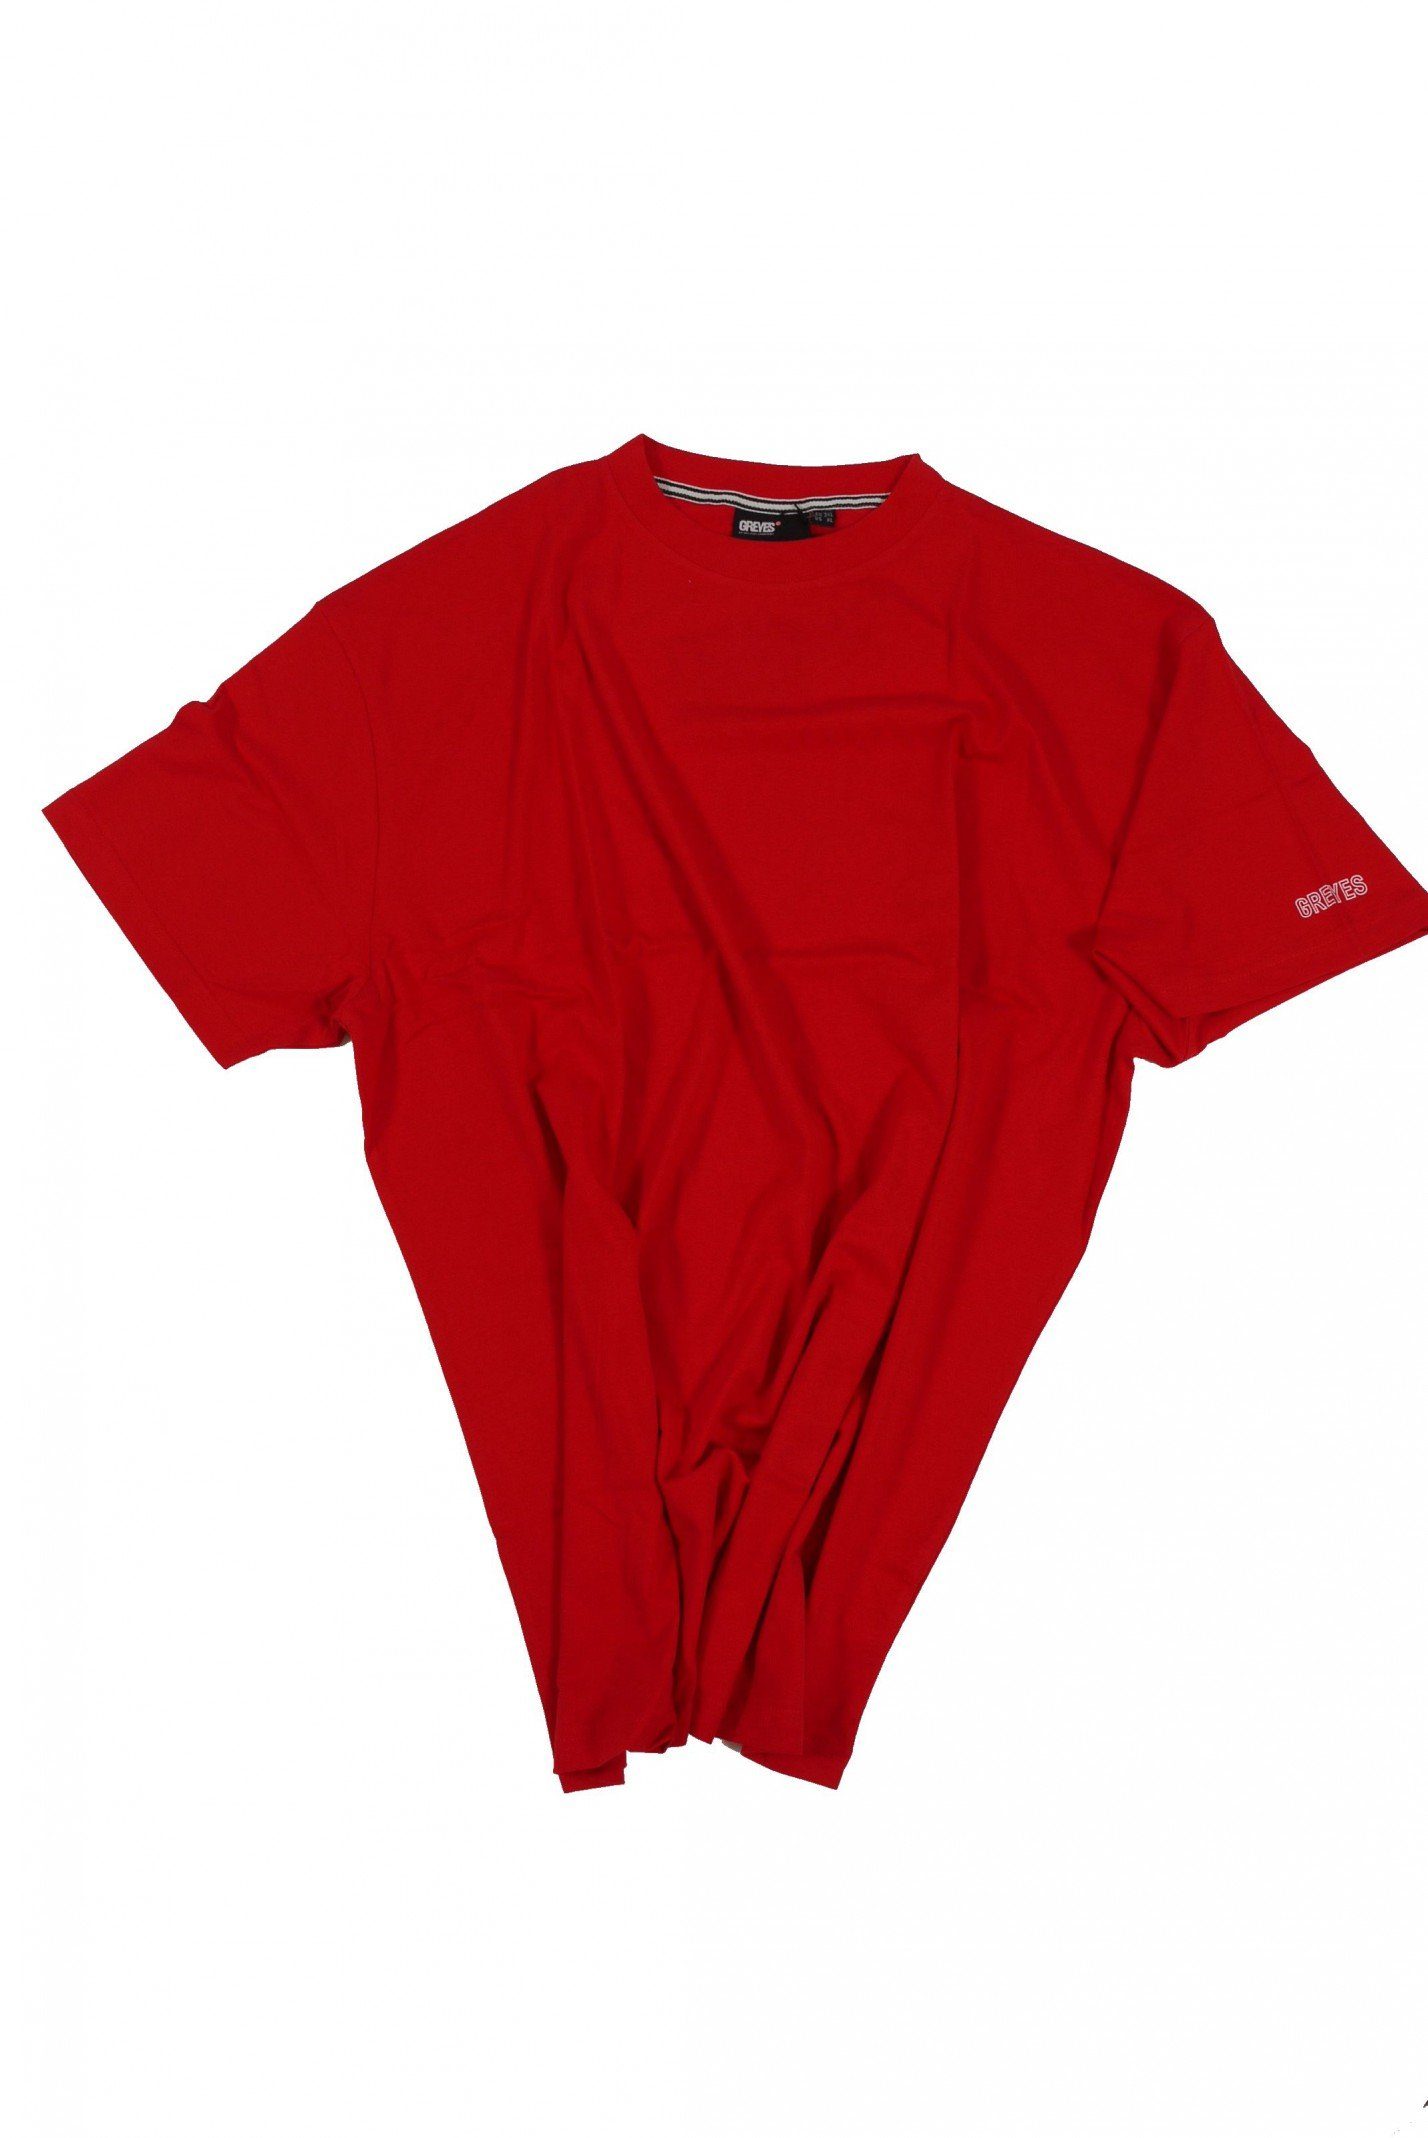 8XL, bis 4 T-Shirt Herrenübergröße Allsize 56 rot T-Shirt in von north